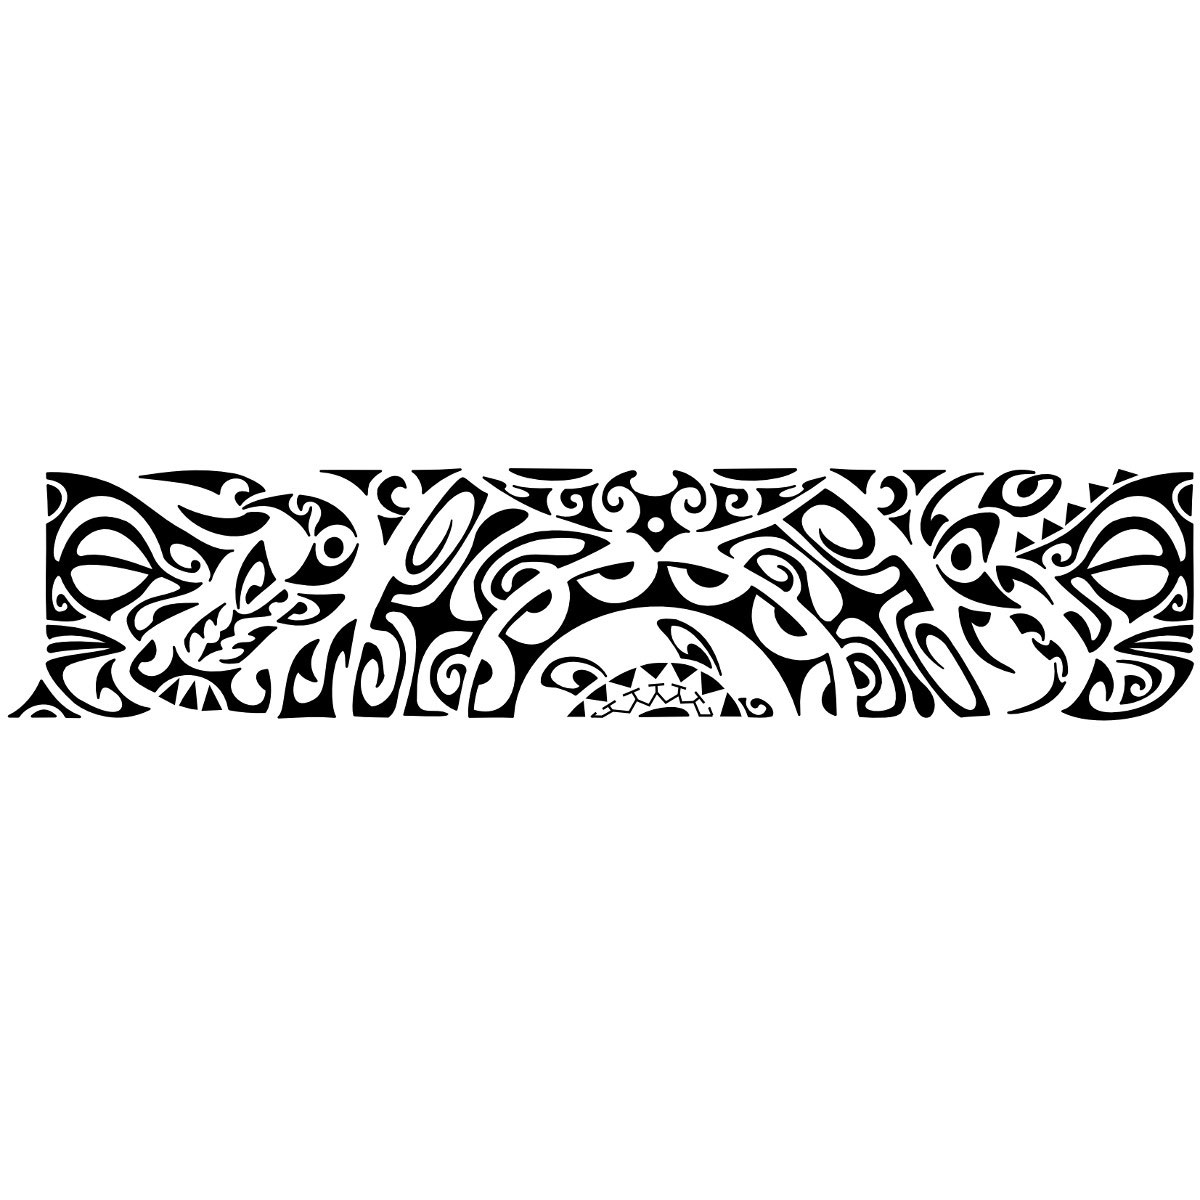 بيت من طابق واحد رجل عجوز أختر ملكية مضيفة سرعة تفوق سرعة الصوت immagini  tatuaggi maori bracciale - verdeambientebenessere.com